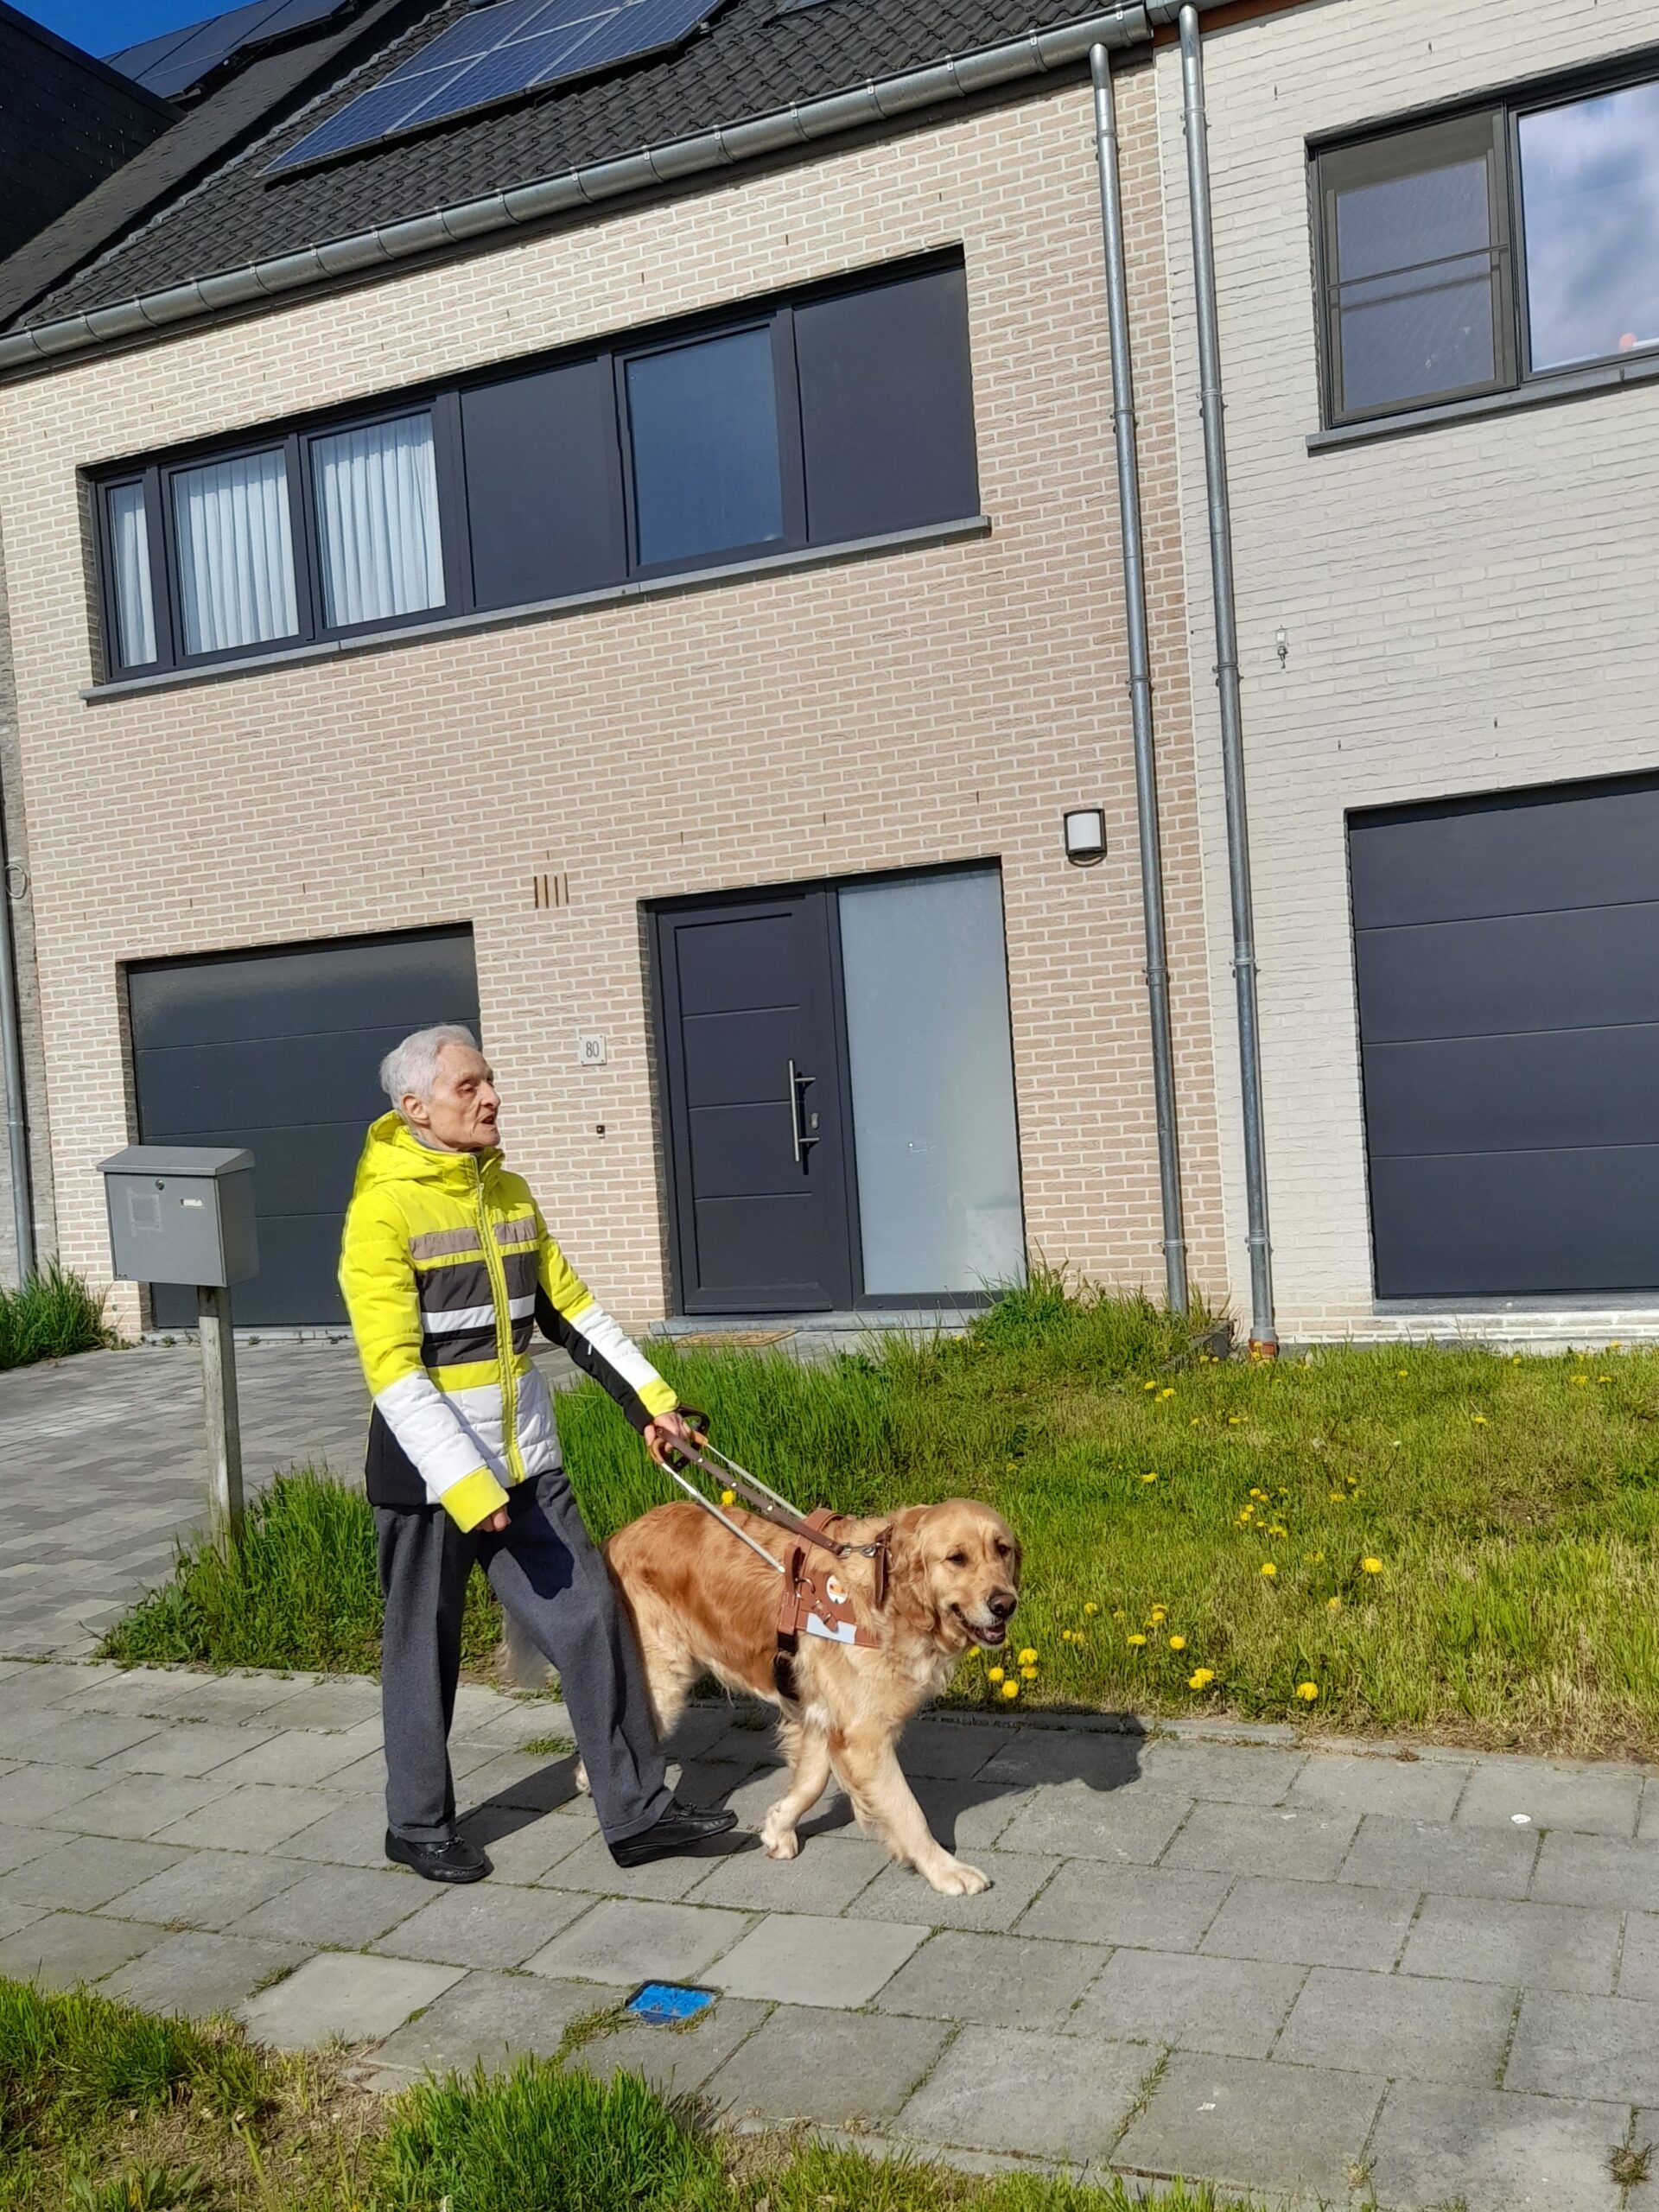 Remise de Scout - golden retriever chien guide d'aveugle qui guide sa maitresse dans les rues de Belgique